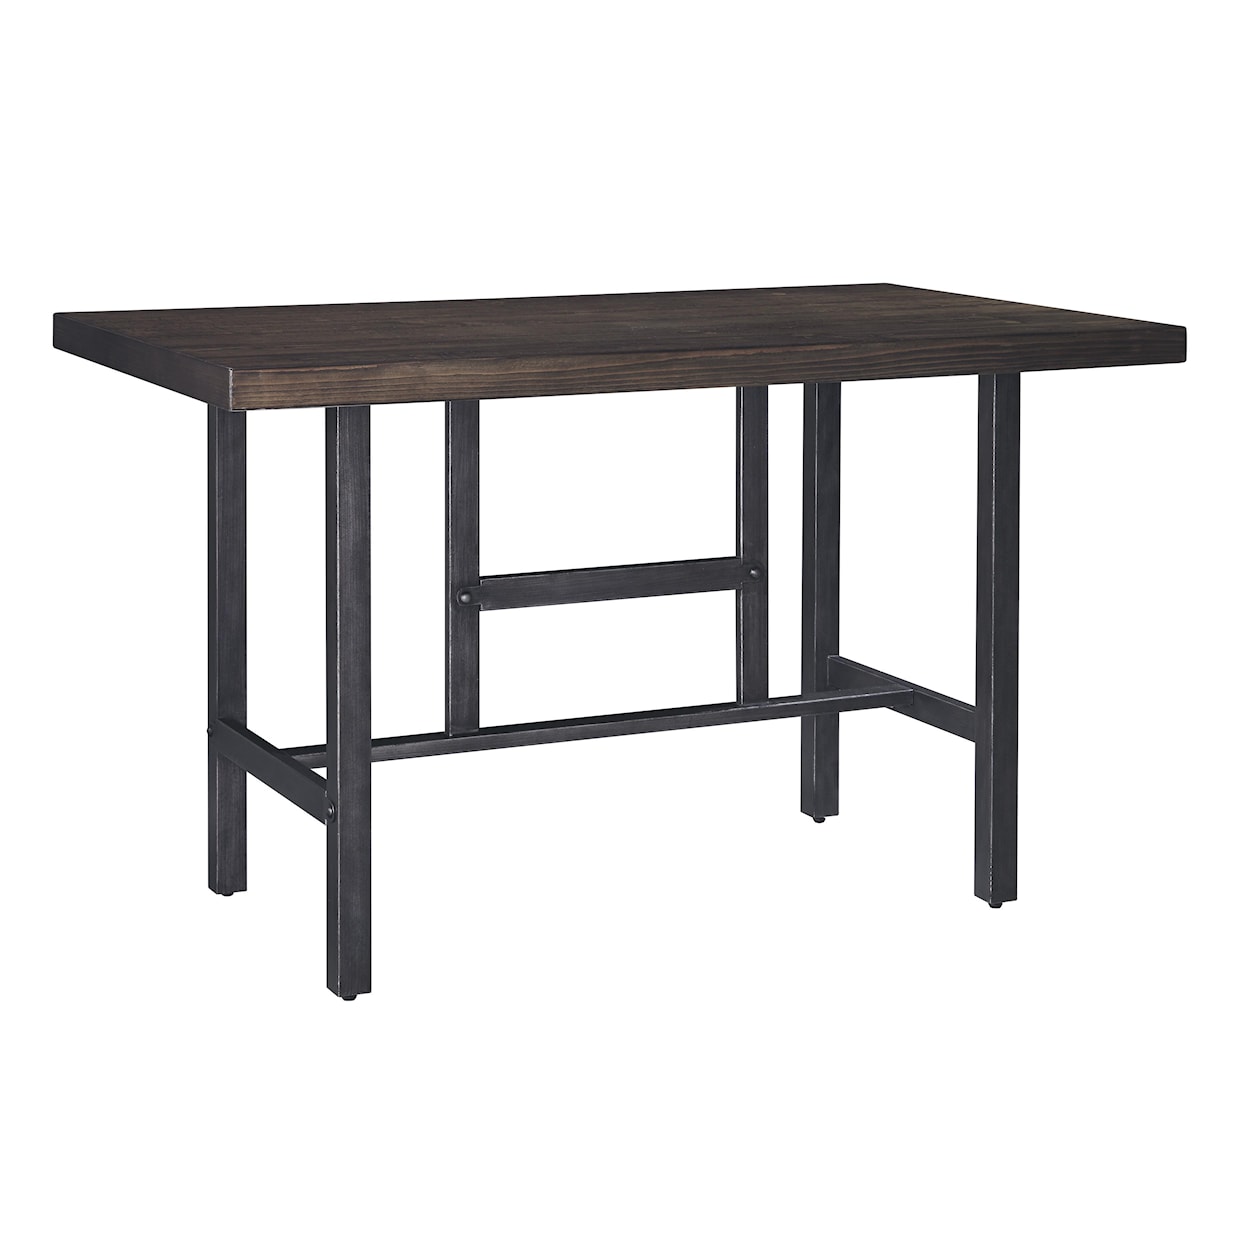 Signature Design Kavara 3-Piece Counter Table & Double Bar Stool Set